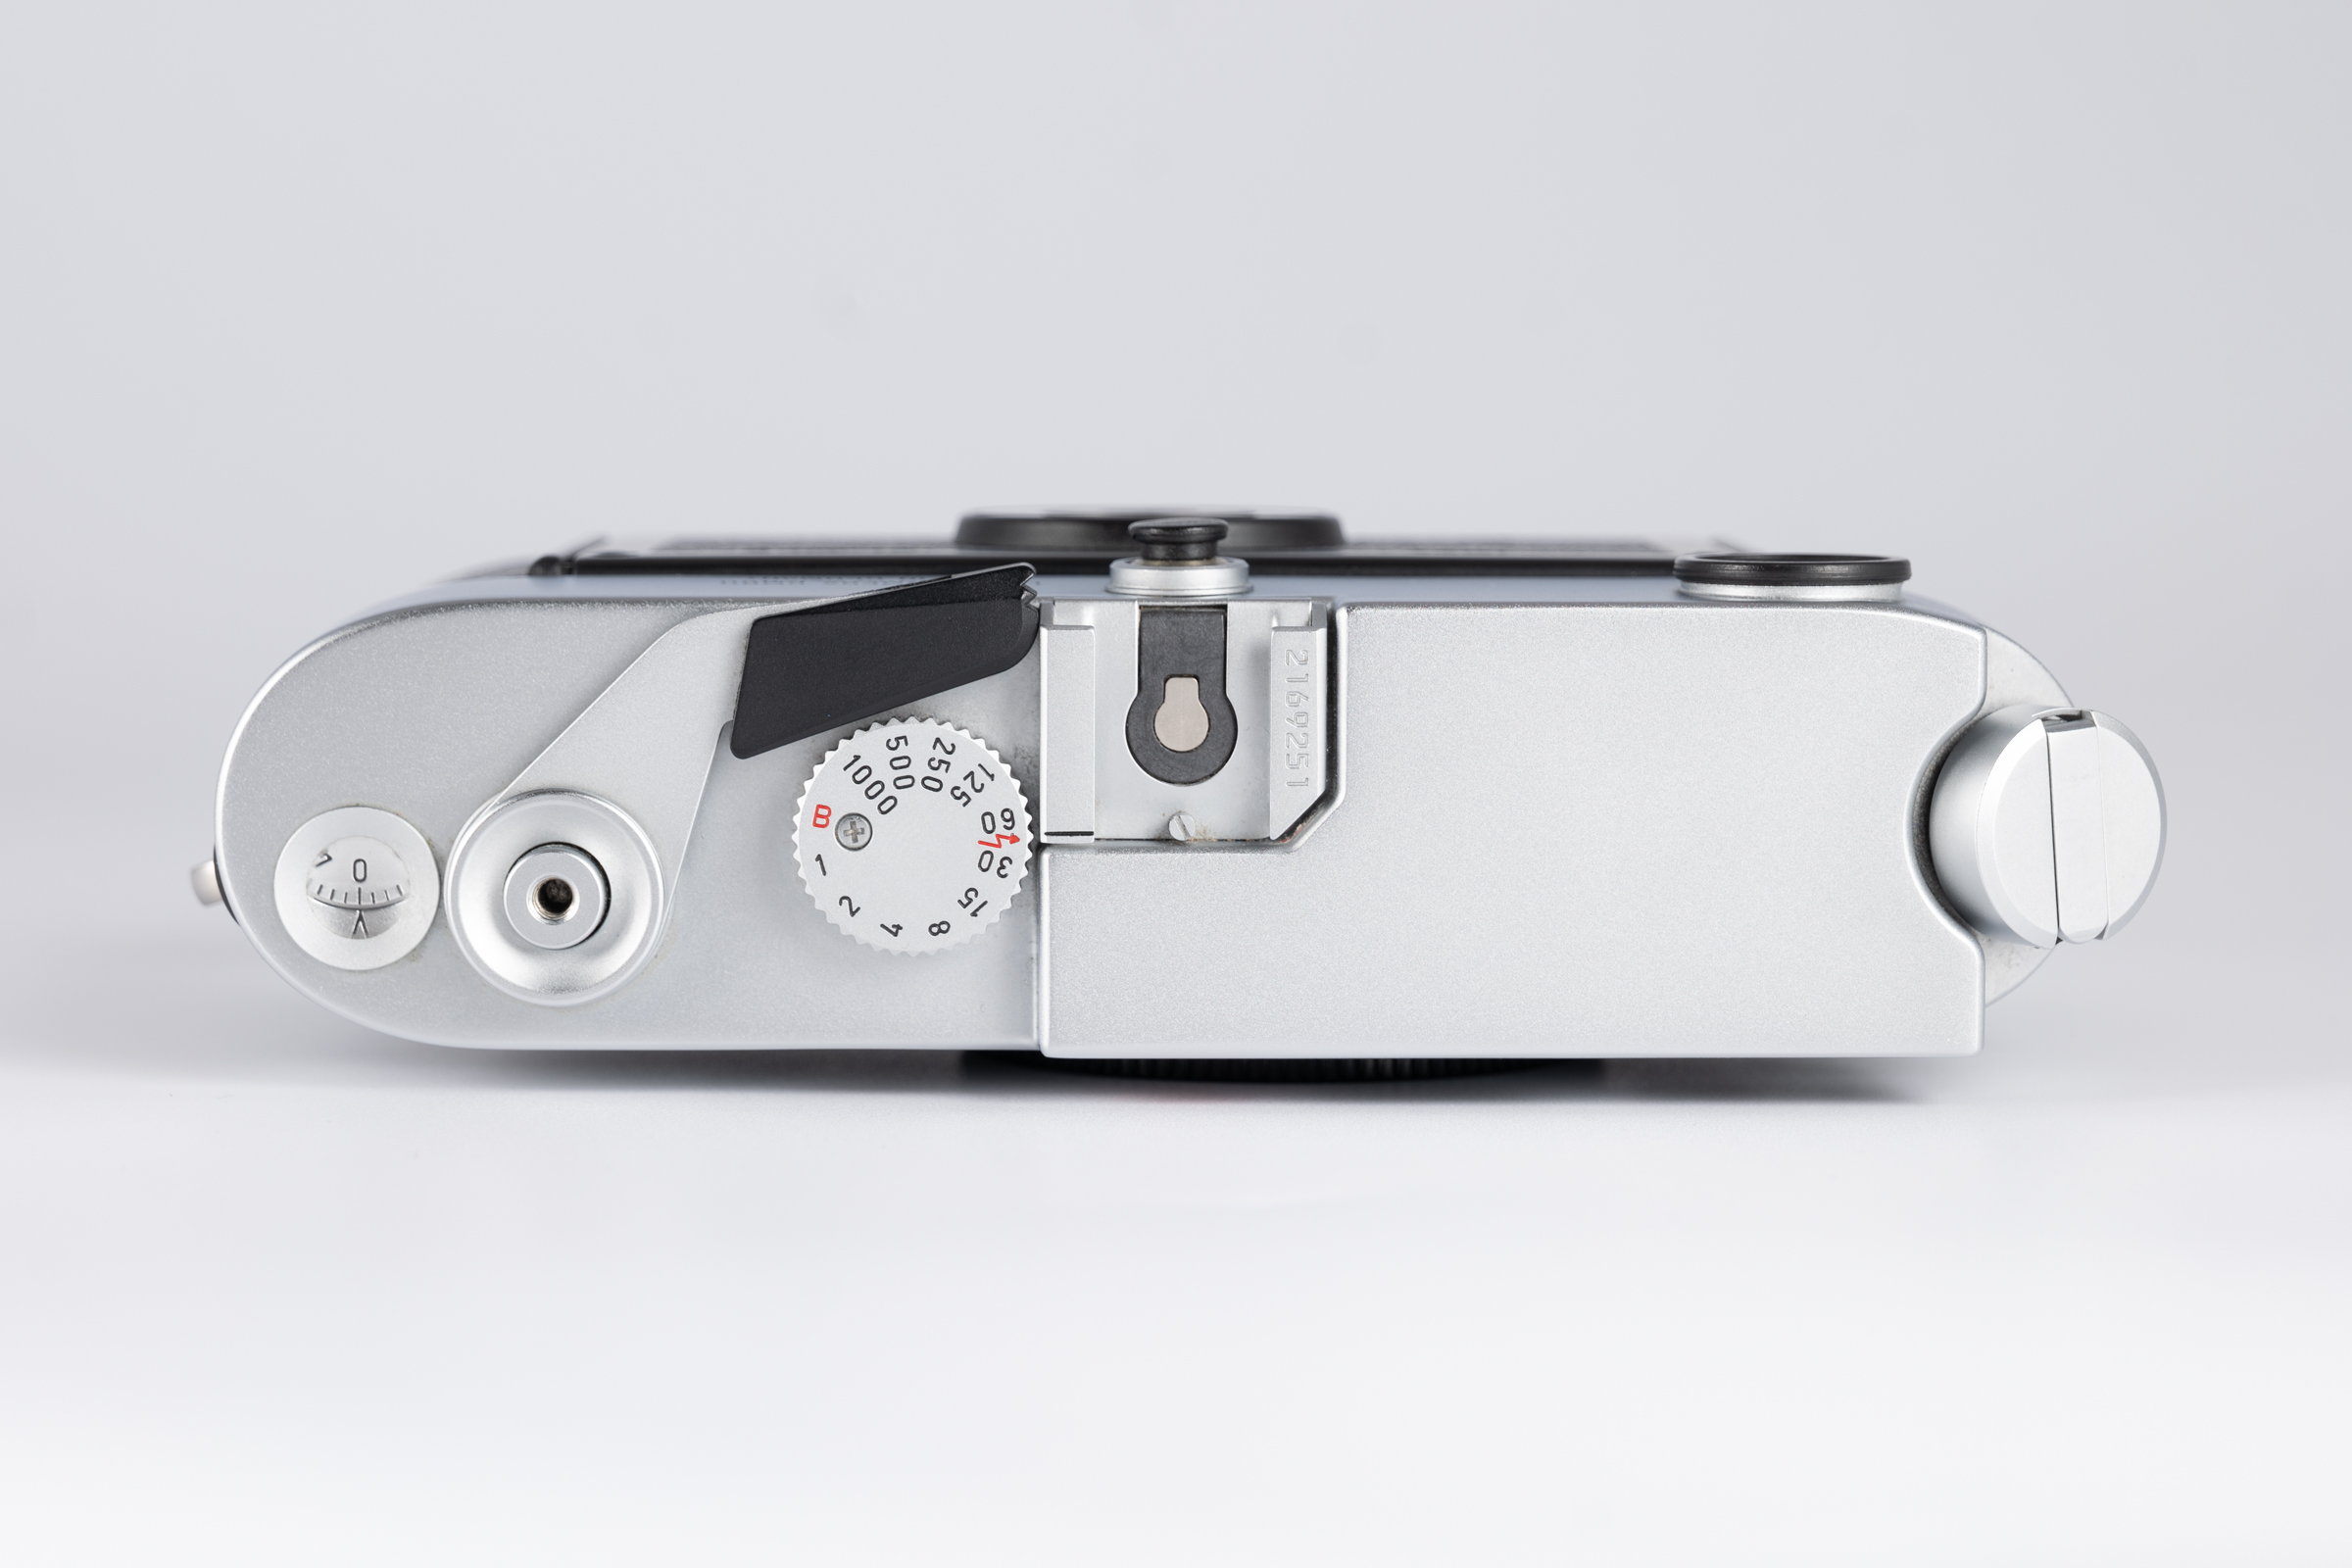 Leica M6 Silver